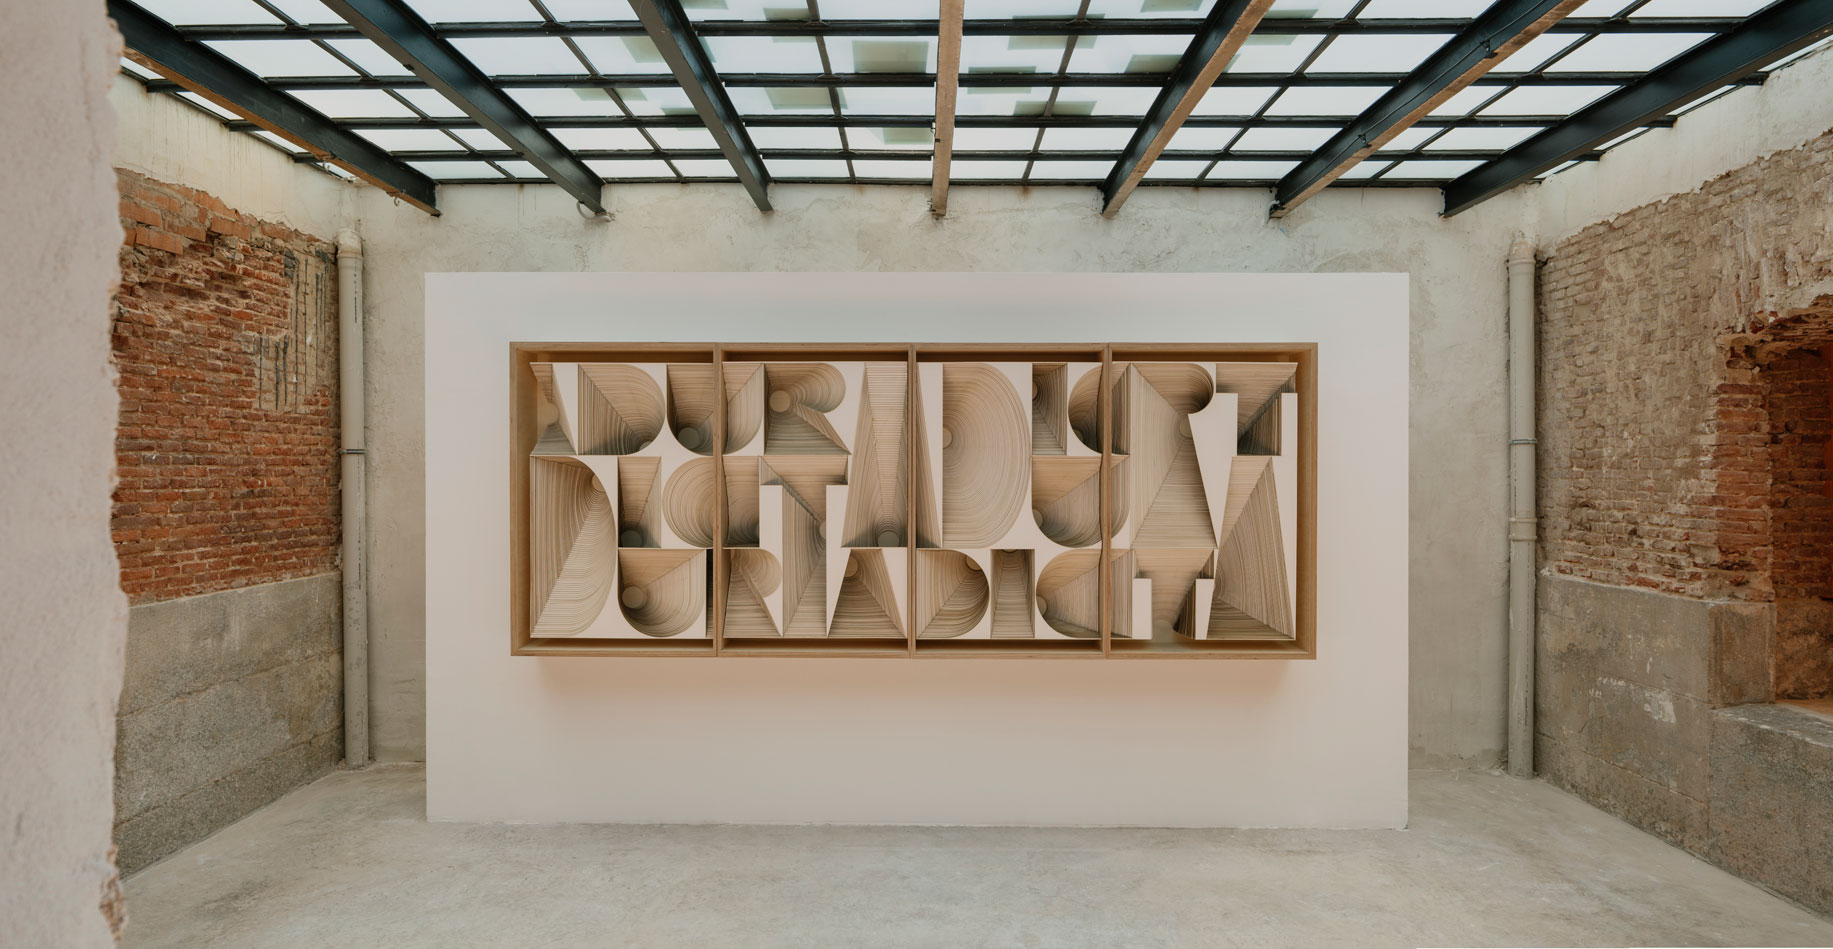 La galería Albarrán Bourdais abre un nuevo espacio en Madrid